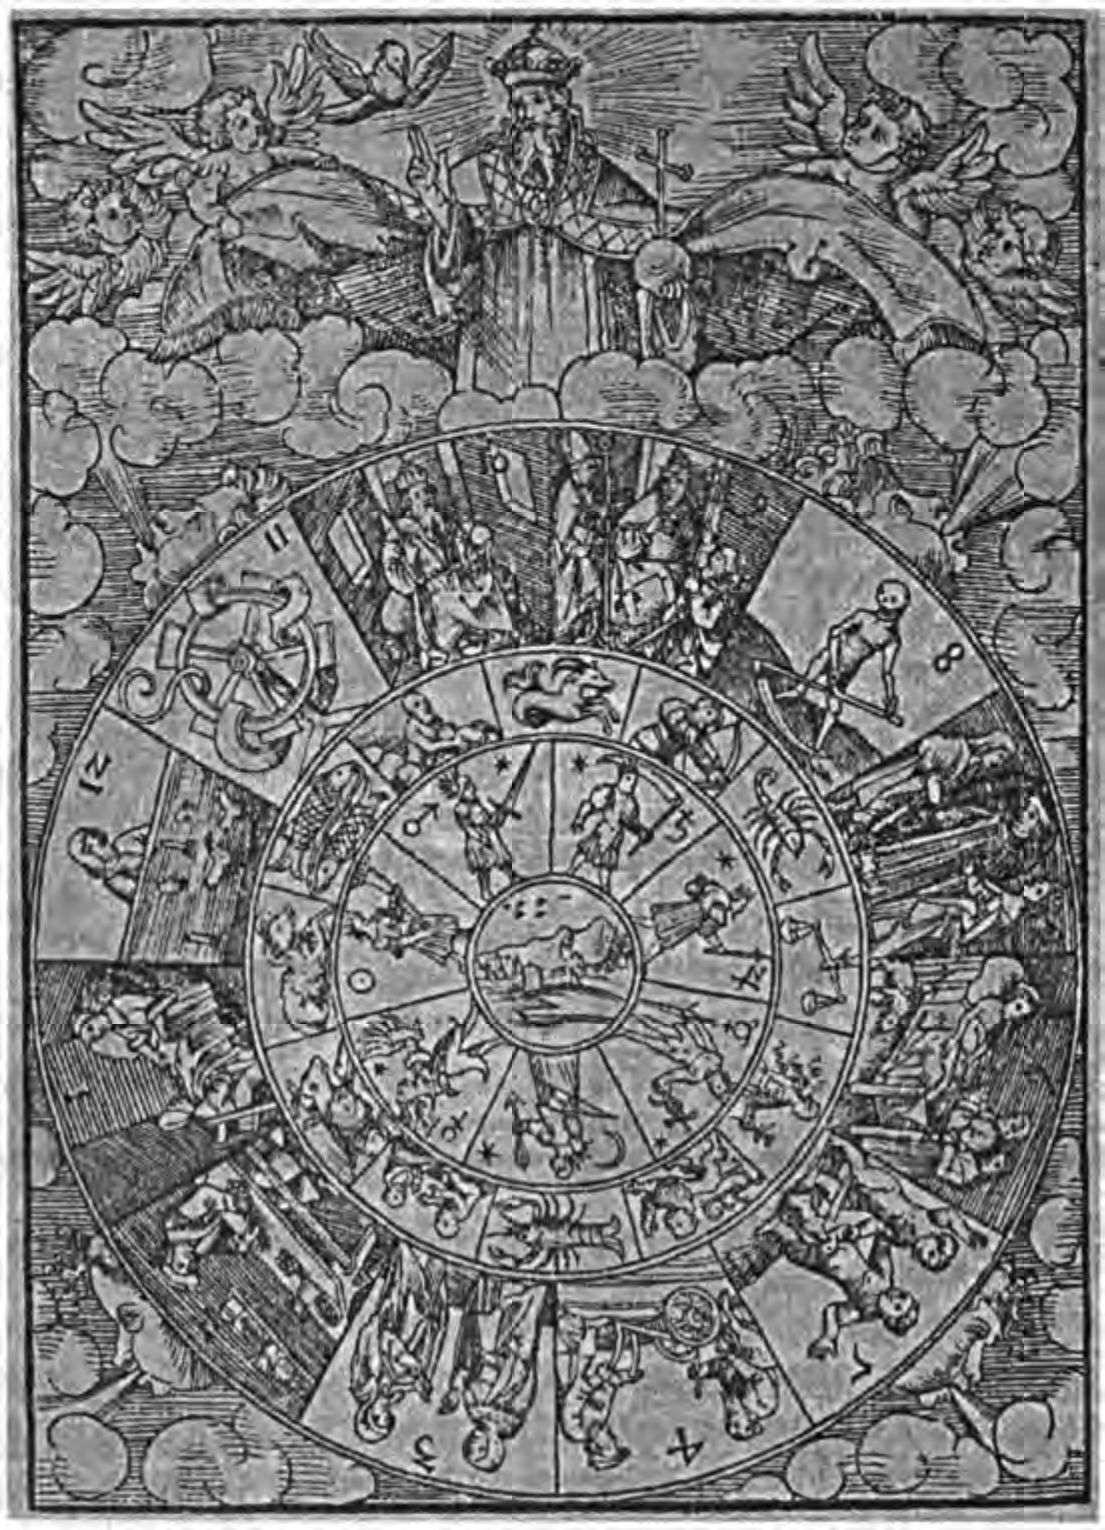 Трехуровневый мир астрологии: двенадцать мунданных домов окружают двенадцать знаков Зодиака и семь планет, с Землей в центре. Показано, что вся система находится под контролем Бога. (Британская Библиотека)